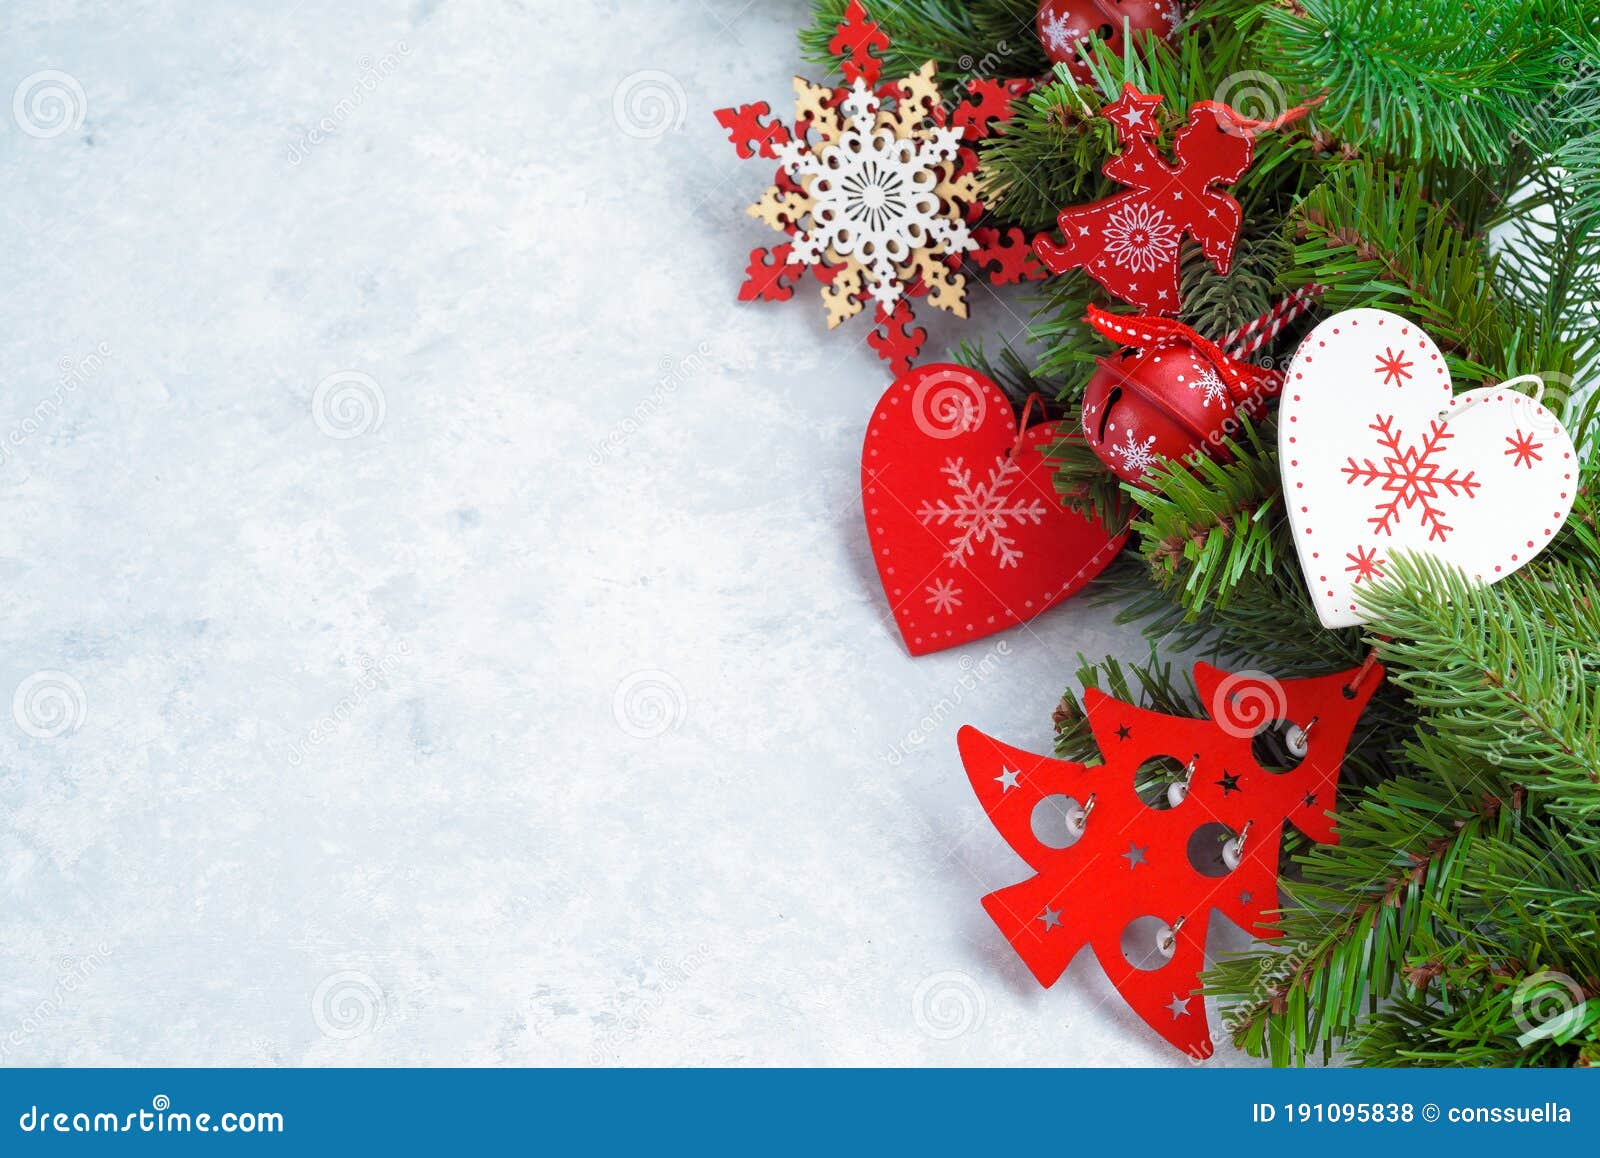 Feliz navidad y próspero año nuevo fondo de navidad con poinsettia copos  de nieve estrellas y bolas tarjeta de felicitación banner de vacaciones  cartel web  Vector Premium